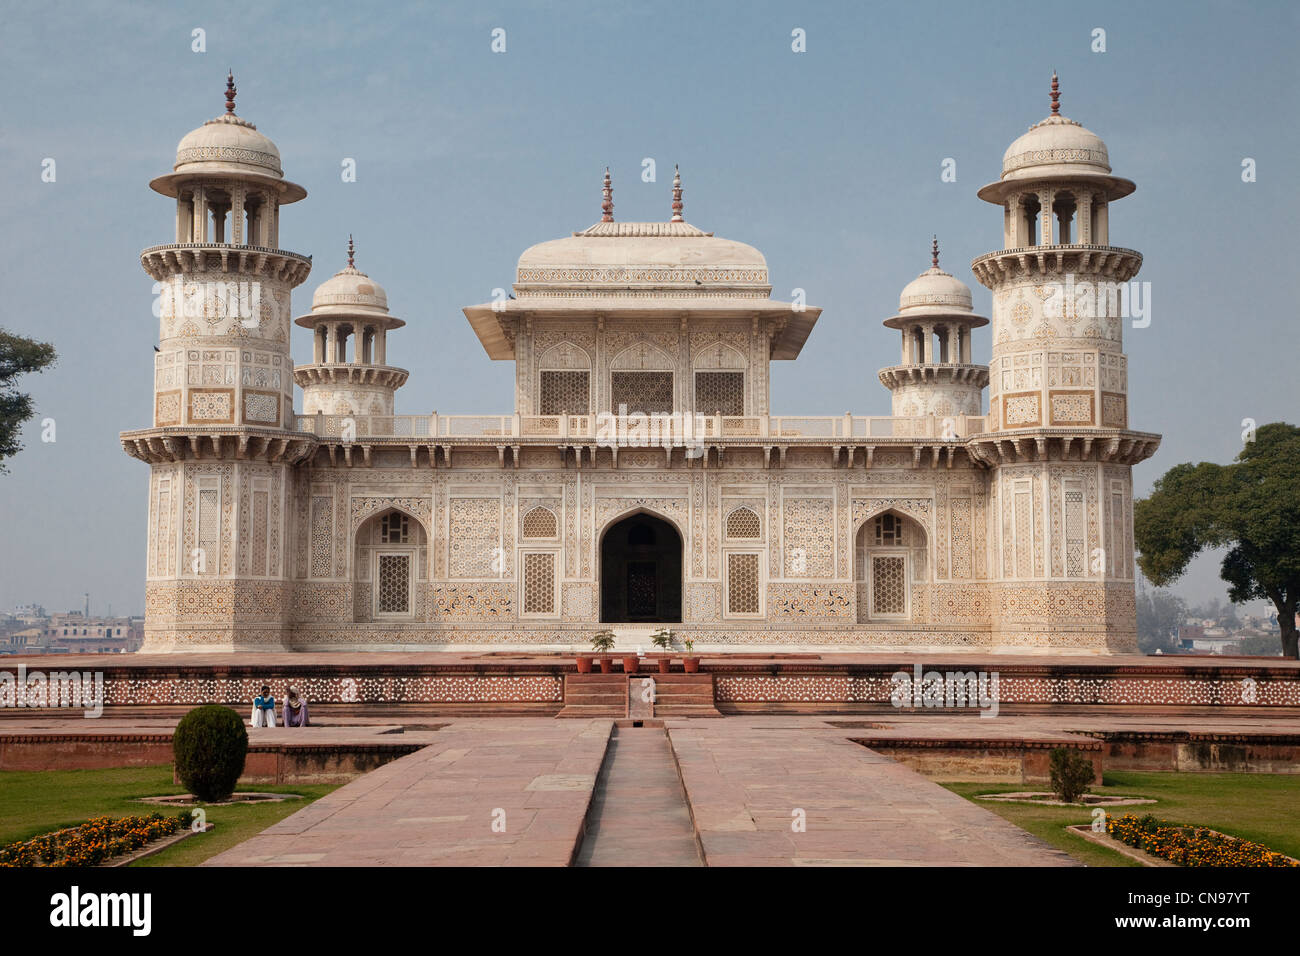 Agra, India. Itimad-ud-Dawlah, Mausoleo de Mirza Ghiyas Beg. La tumba se refiere a veces como el "Baby Taj". Foto de stock